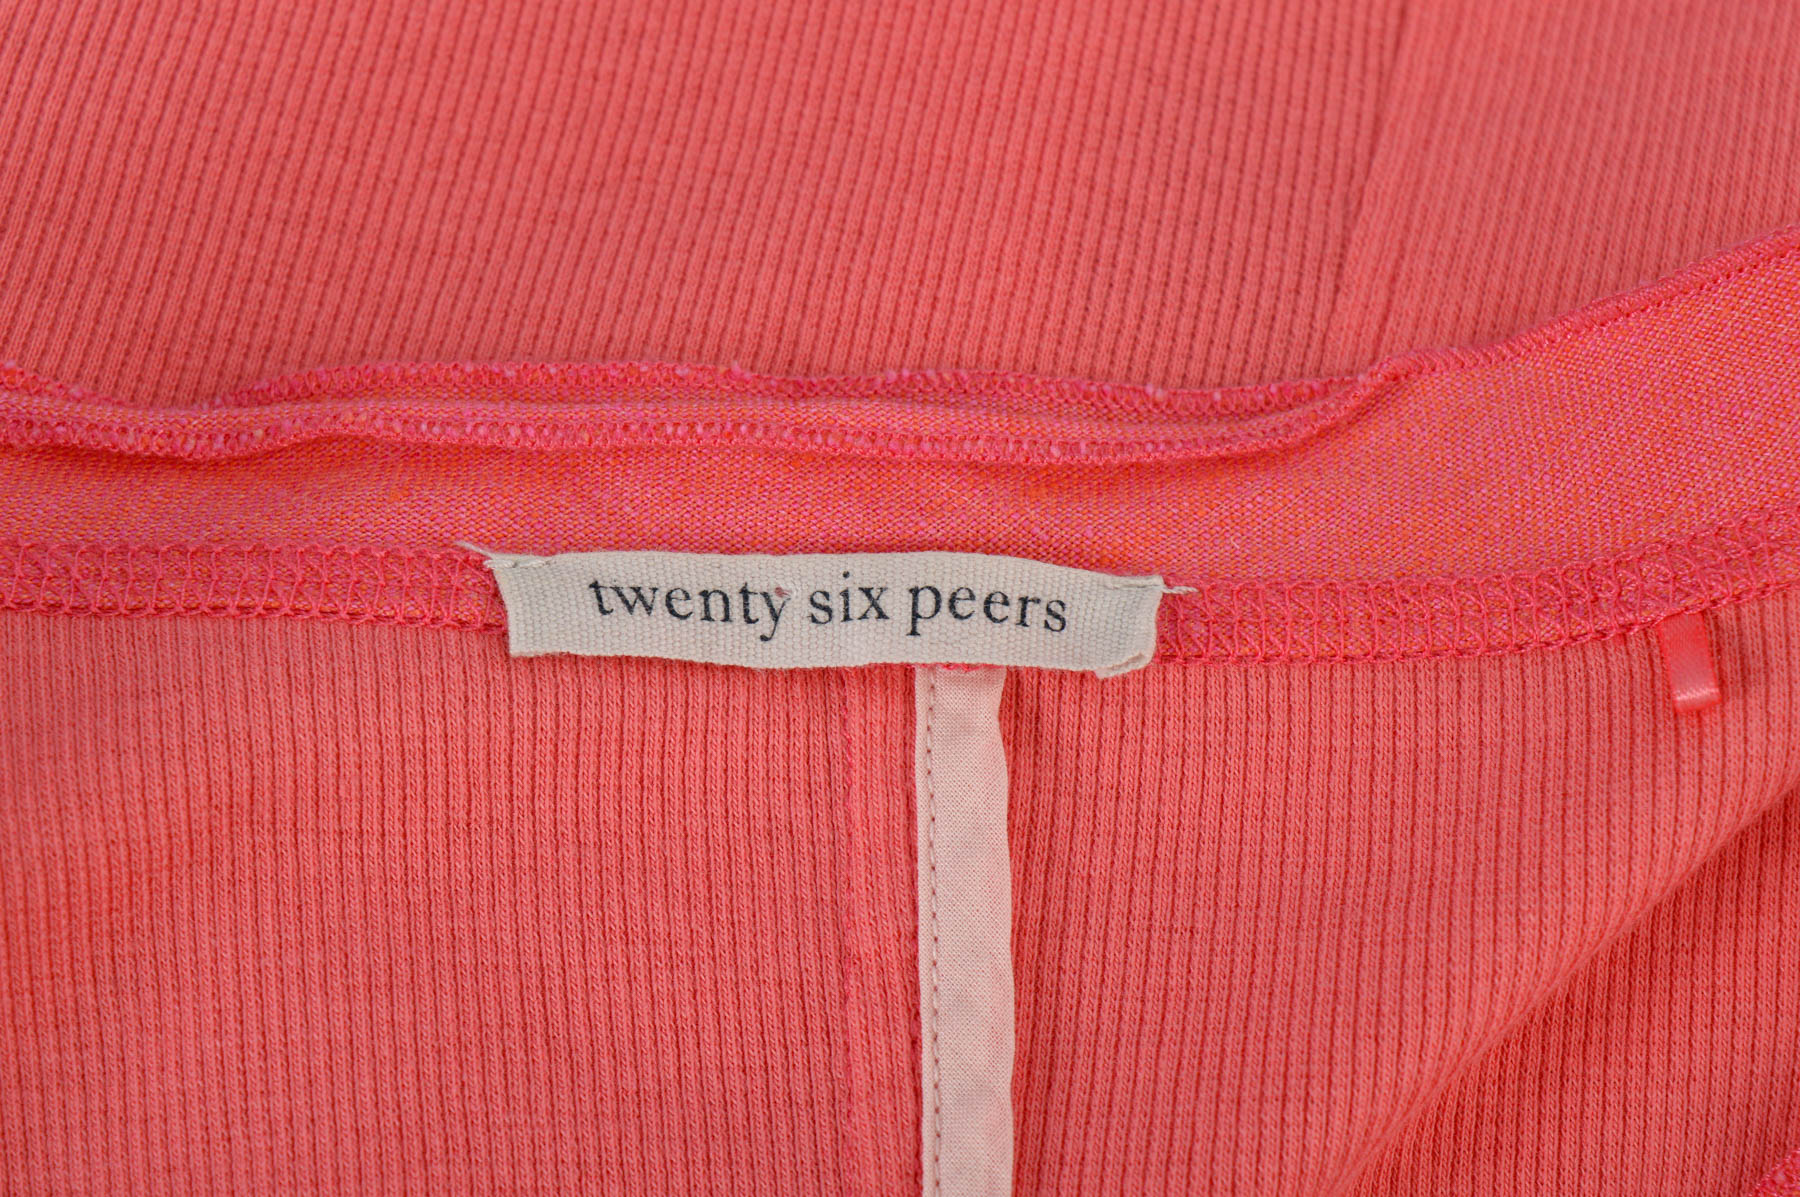 Γυναικεία ζακέτα - Twenty six peers - 2